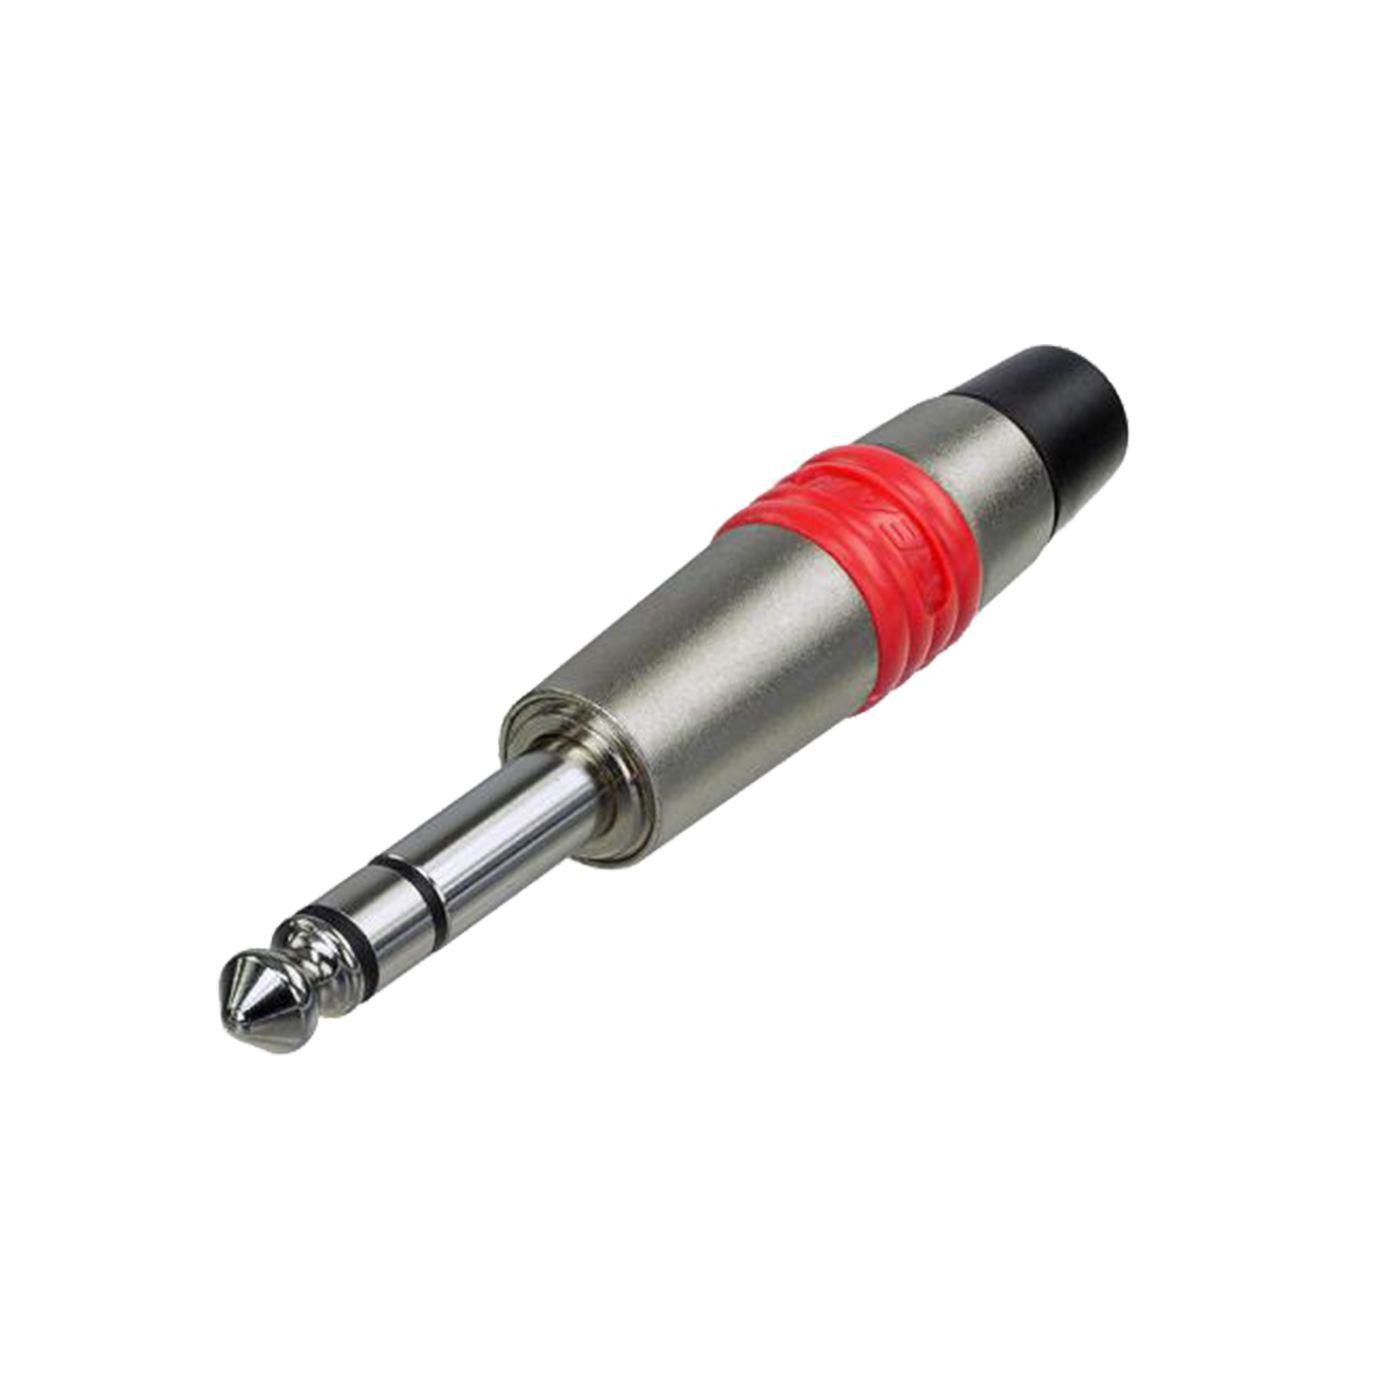 Rean - Plug 1/4 Estéreo con Identificador sin Tornillo, Color: Rojo Mod.NYS228C-2_44